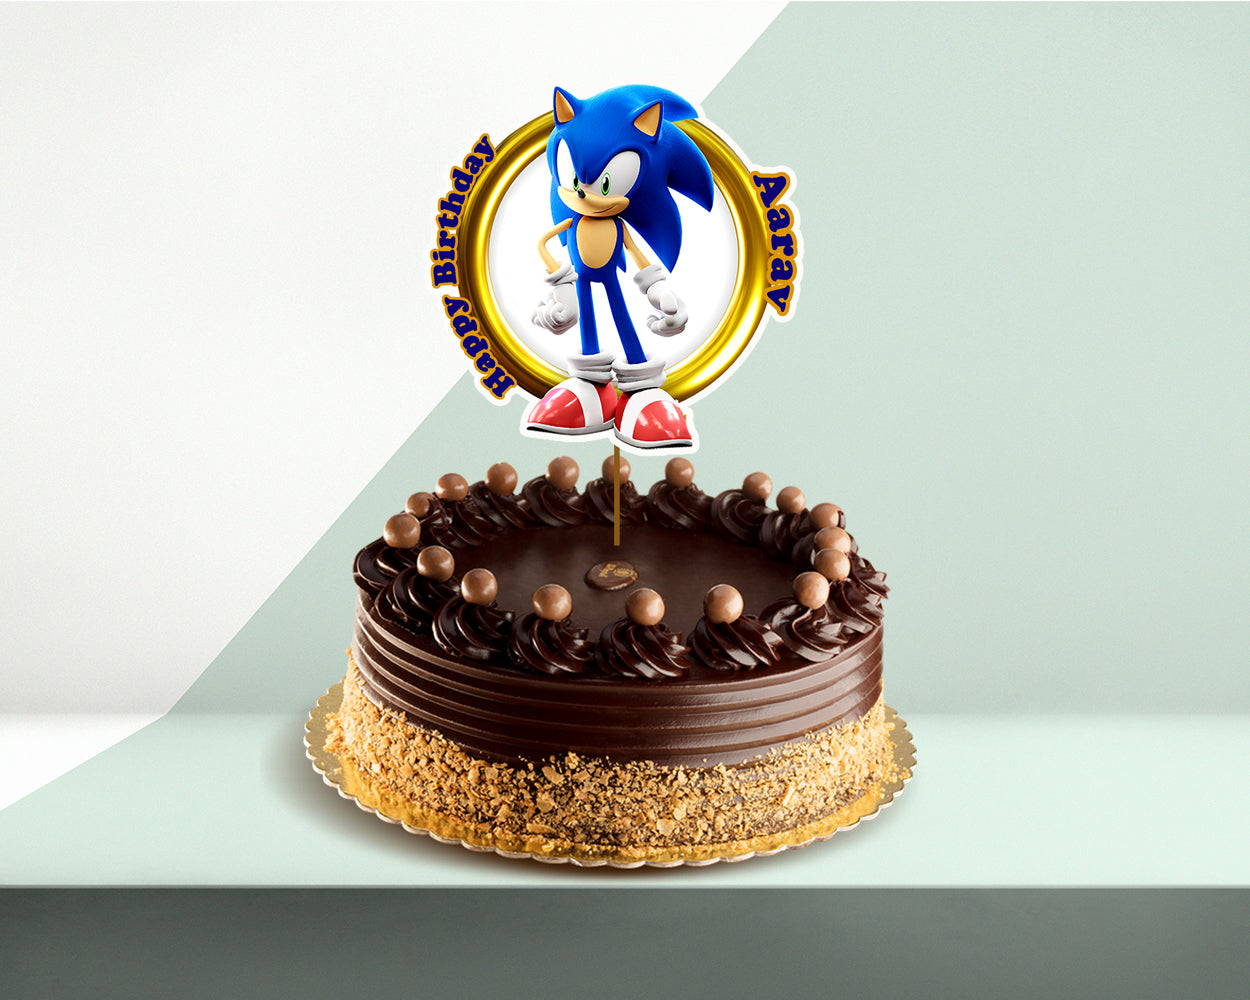 Awesome Sonic the Hedgehog Cake - Amazing Cake Ideas